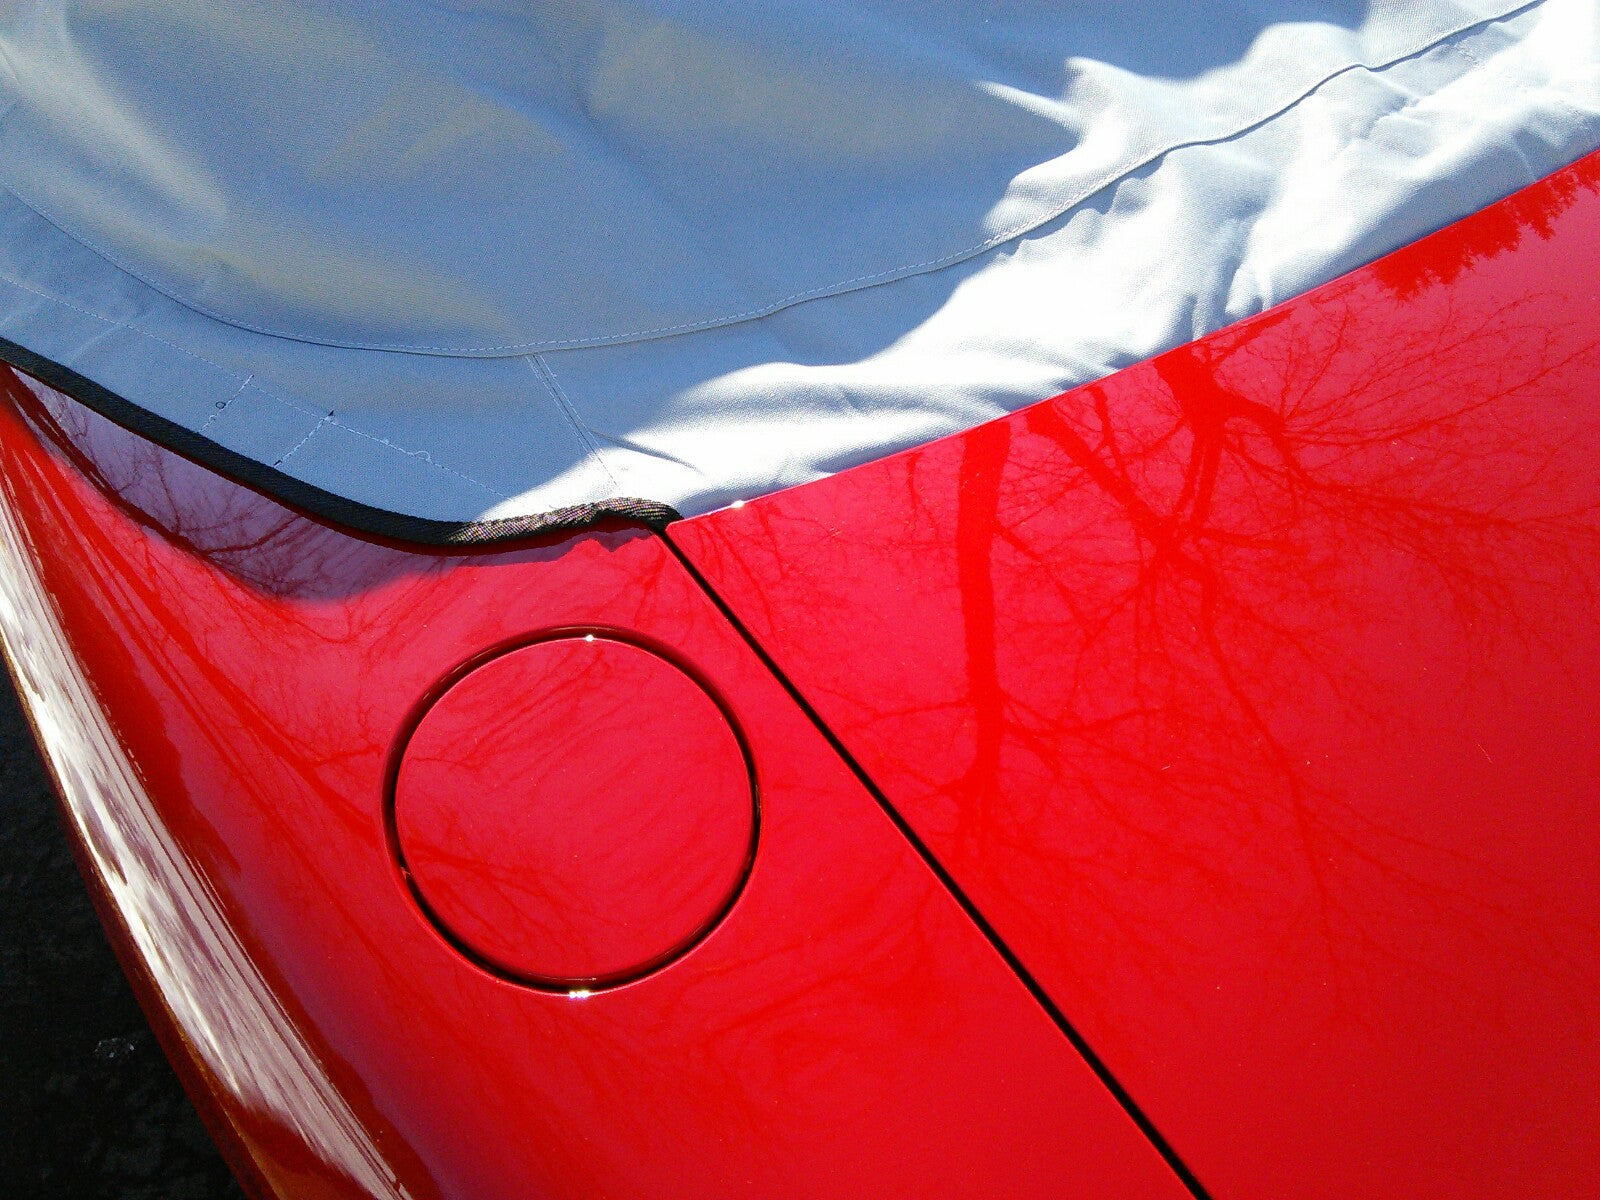 Media cubierta protectora de techo Soft Top para Mazda Miata MX5 Mk1 (NA) Mk2 (NB) Mk2.5 - 1989 a 2005 (113G) - GRIS